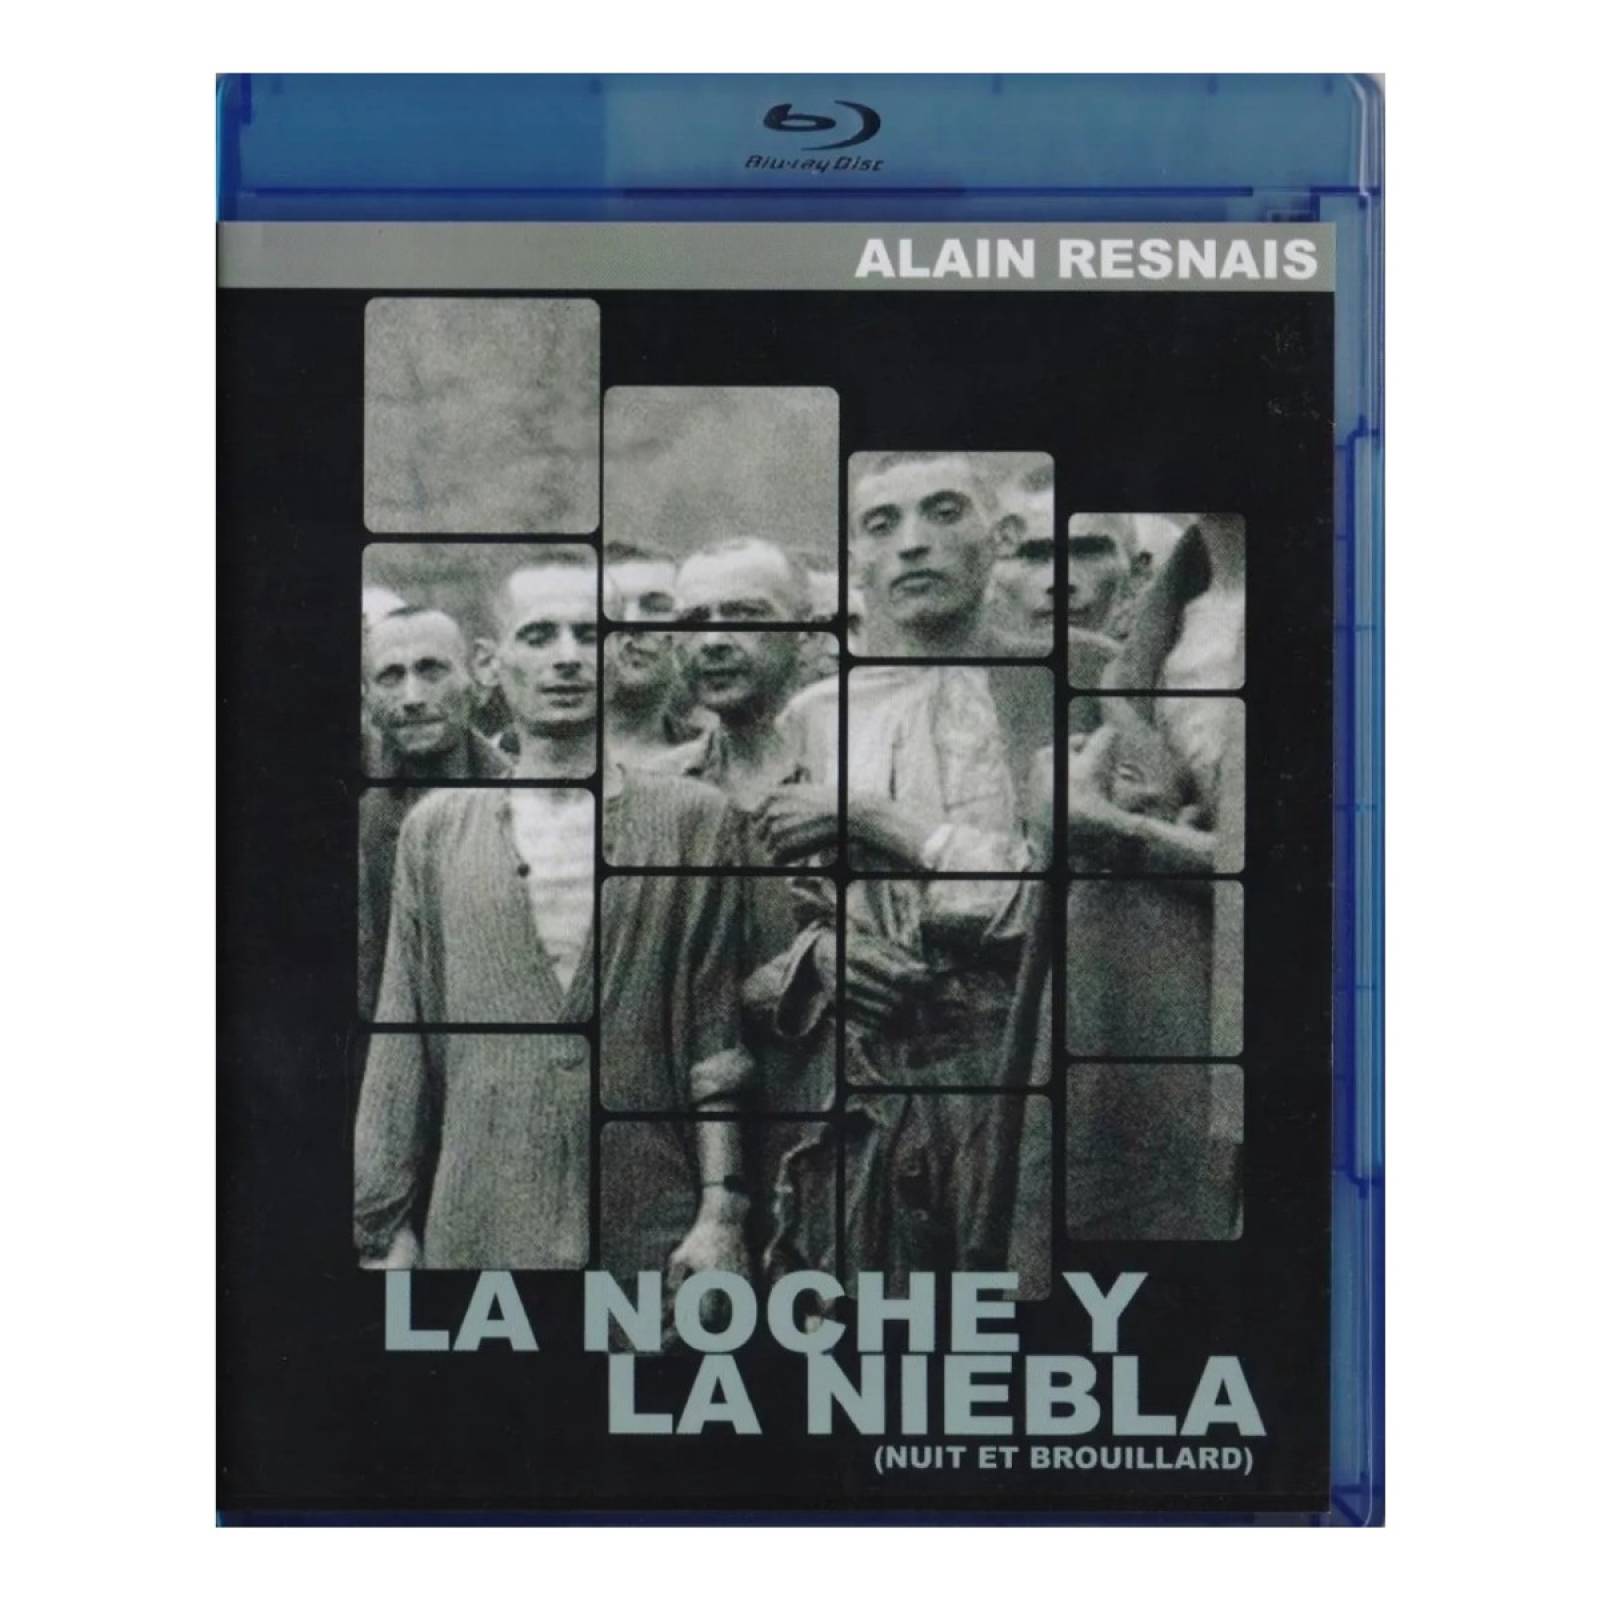 NOCHE Y NIEBLA (1955) de Alain Resnais